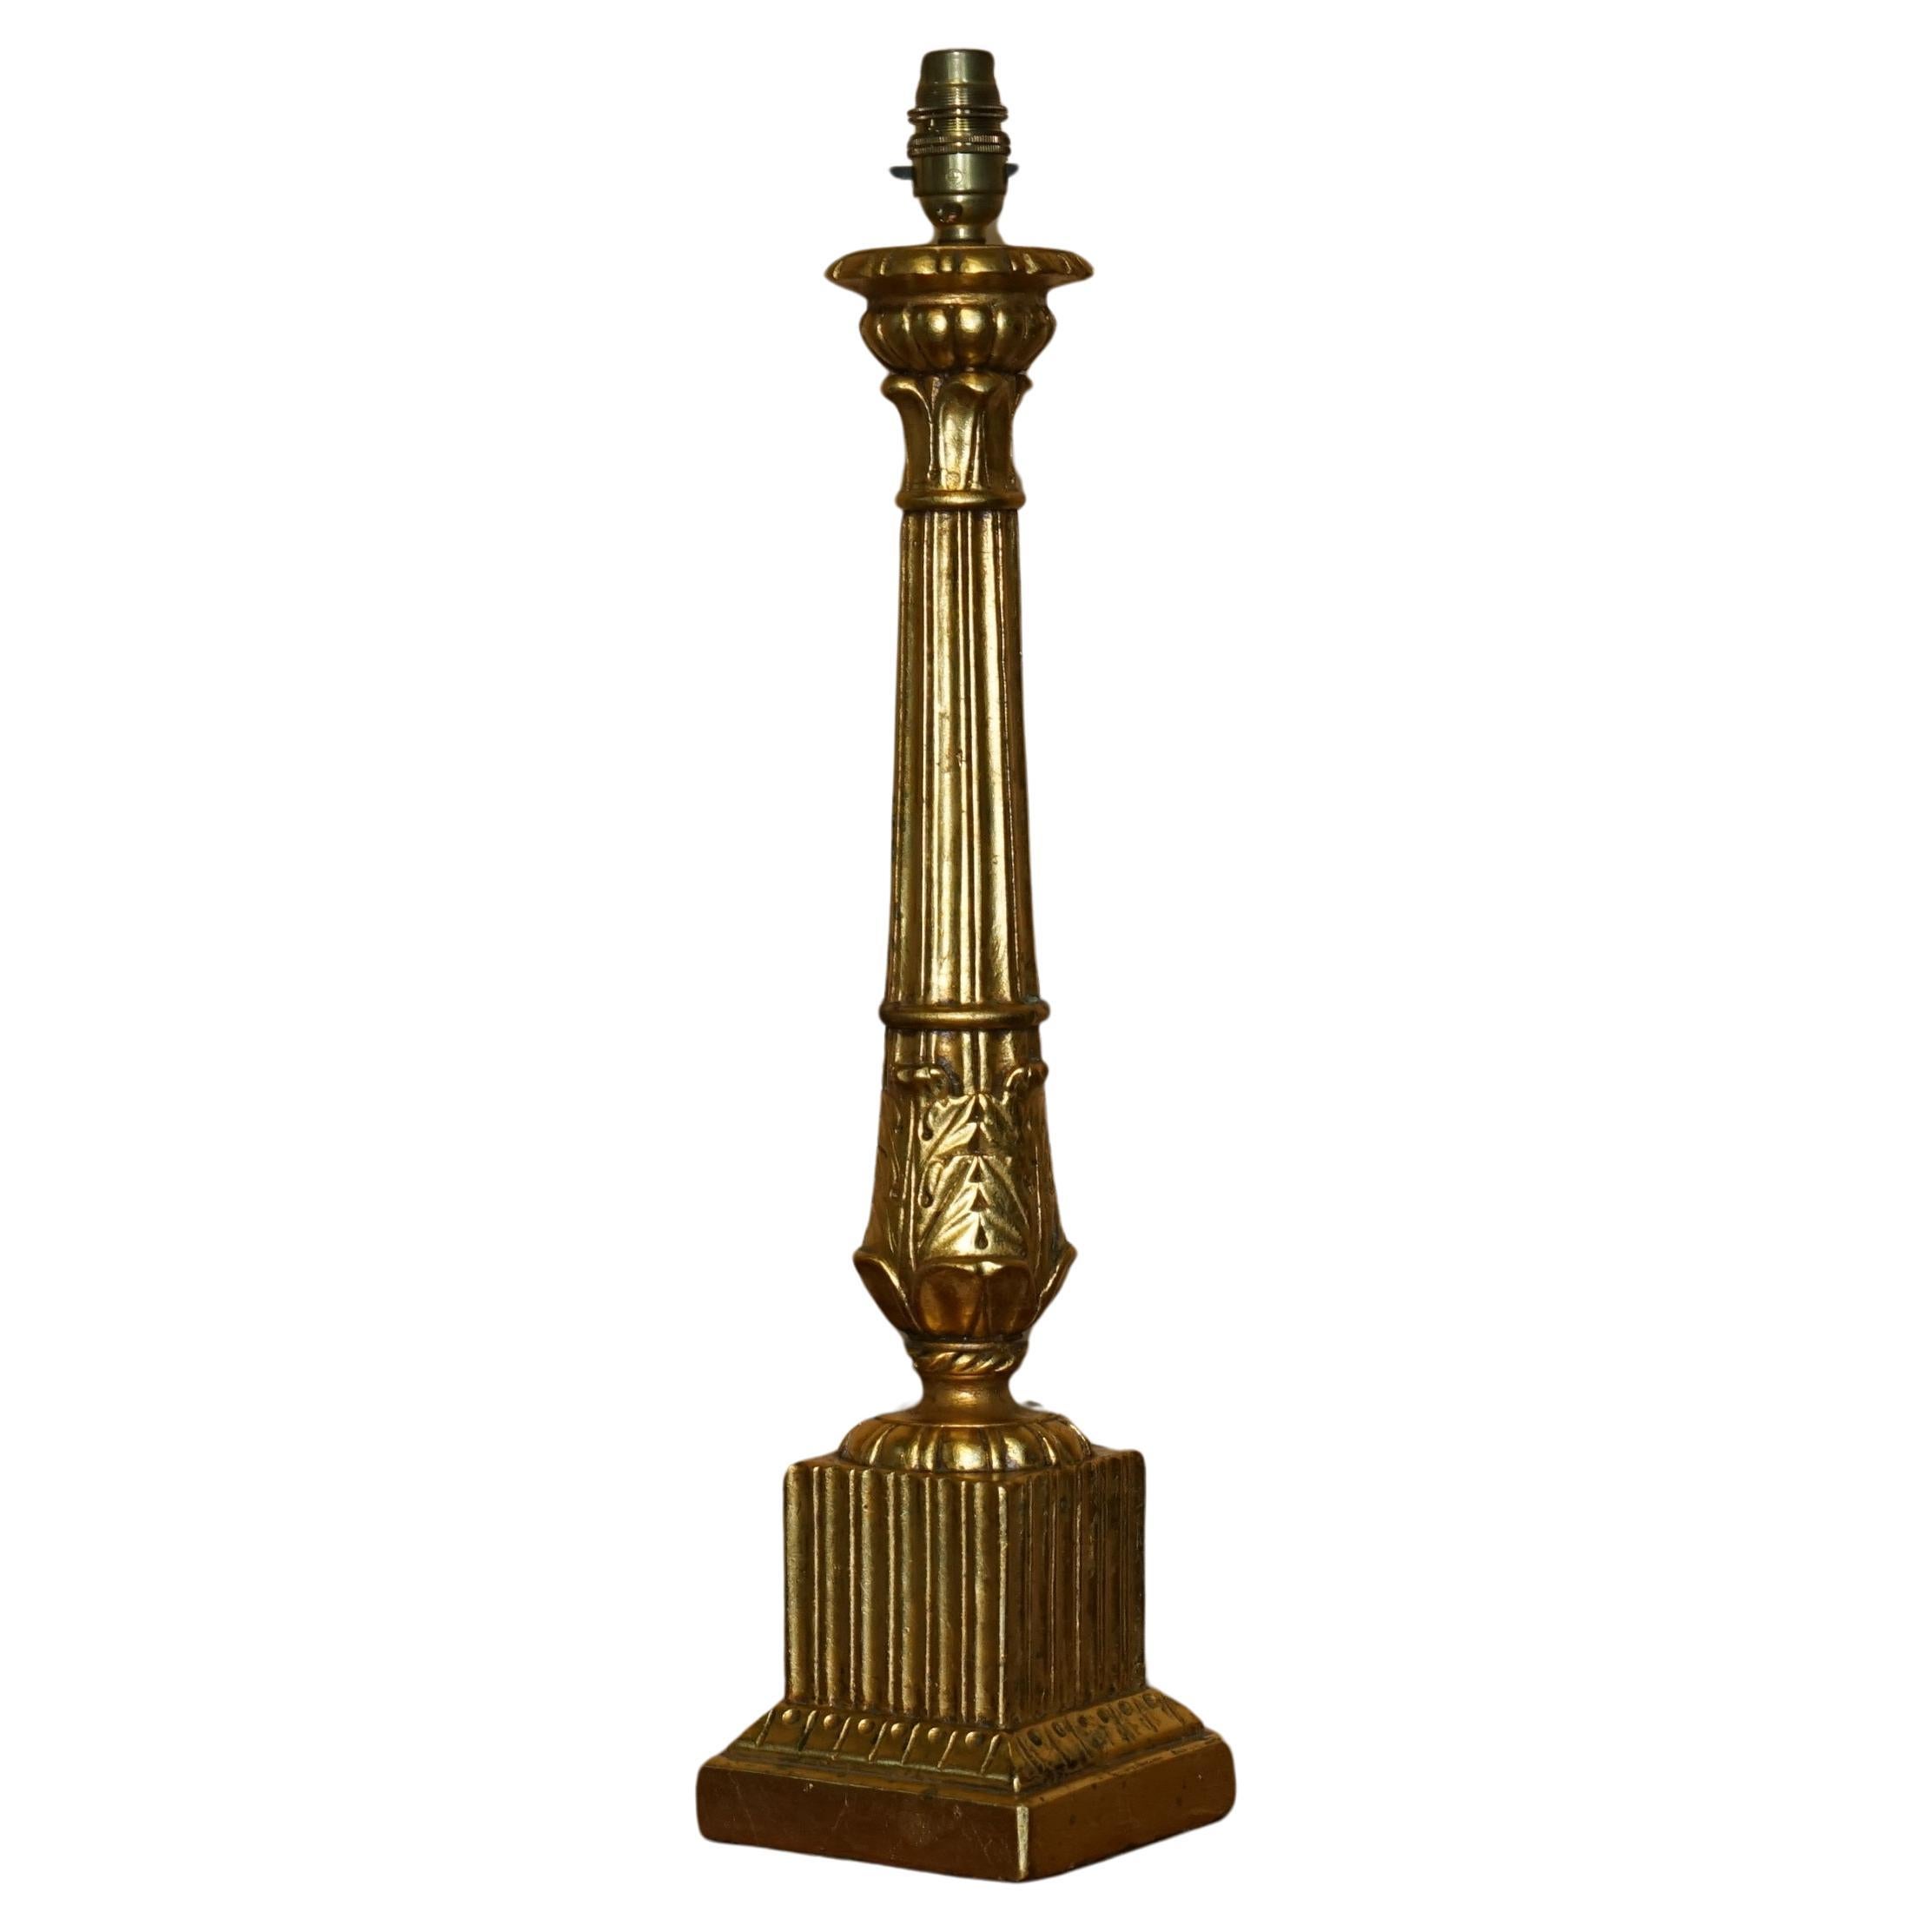 Charmante lampe de table CORINTHIENNE en bois doré, sculptée à la main et entièrement entretenue.